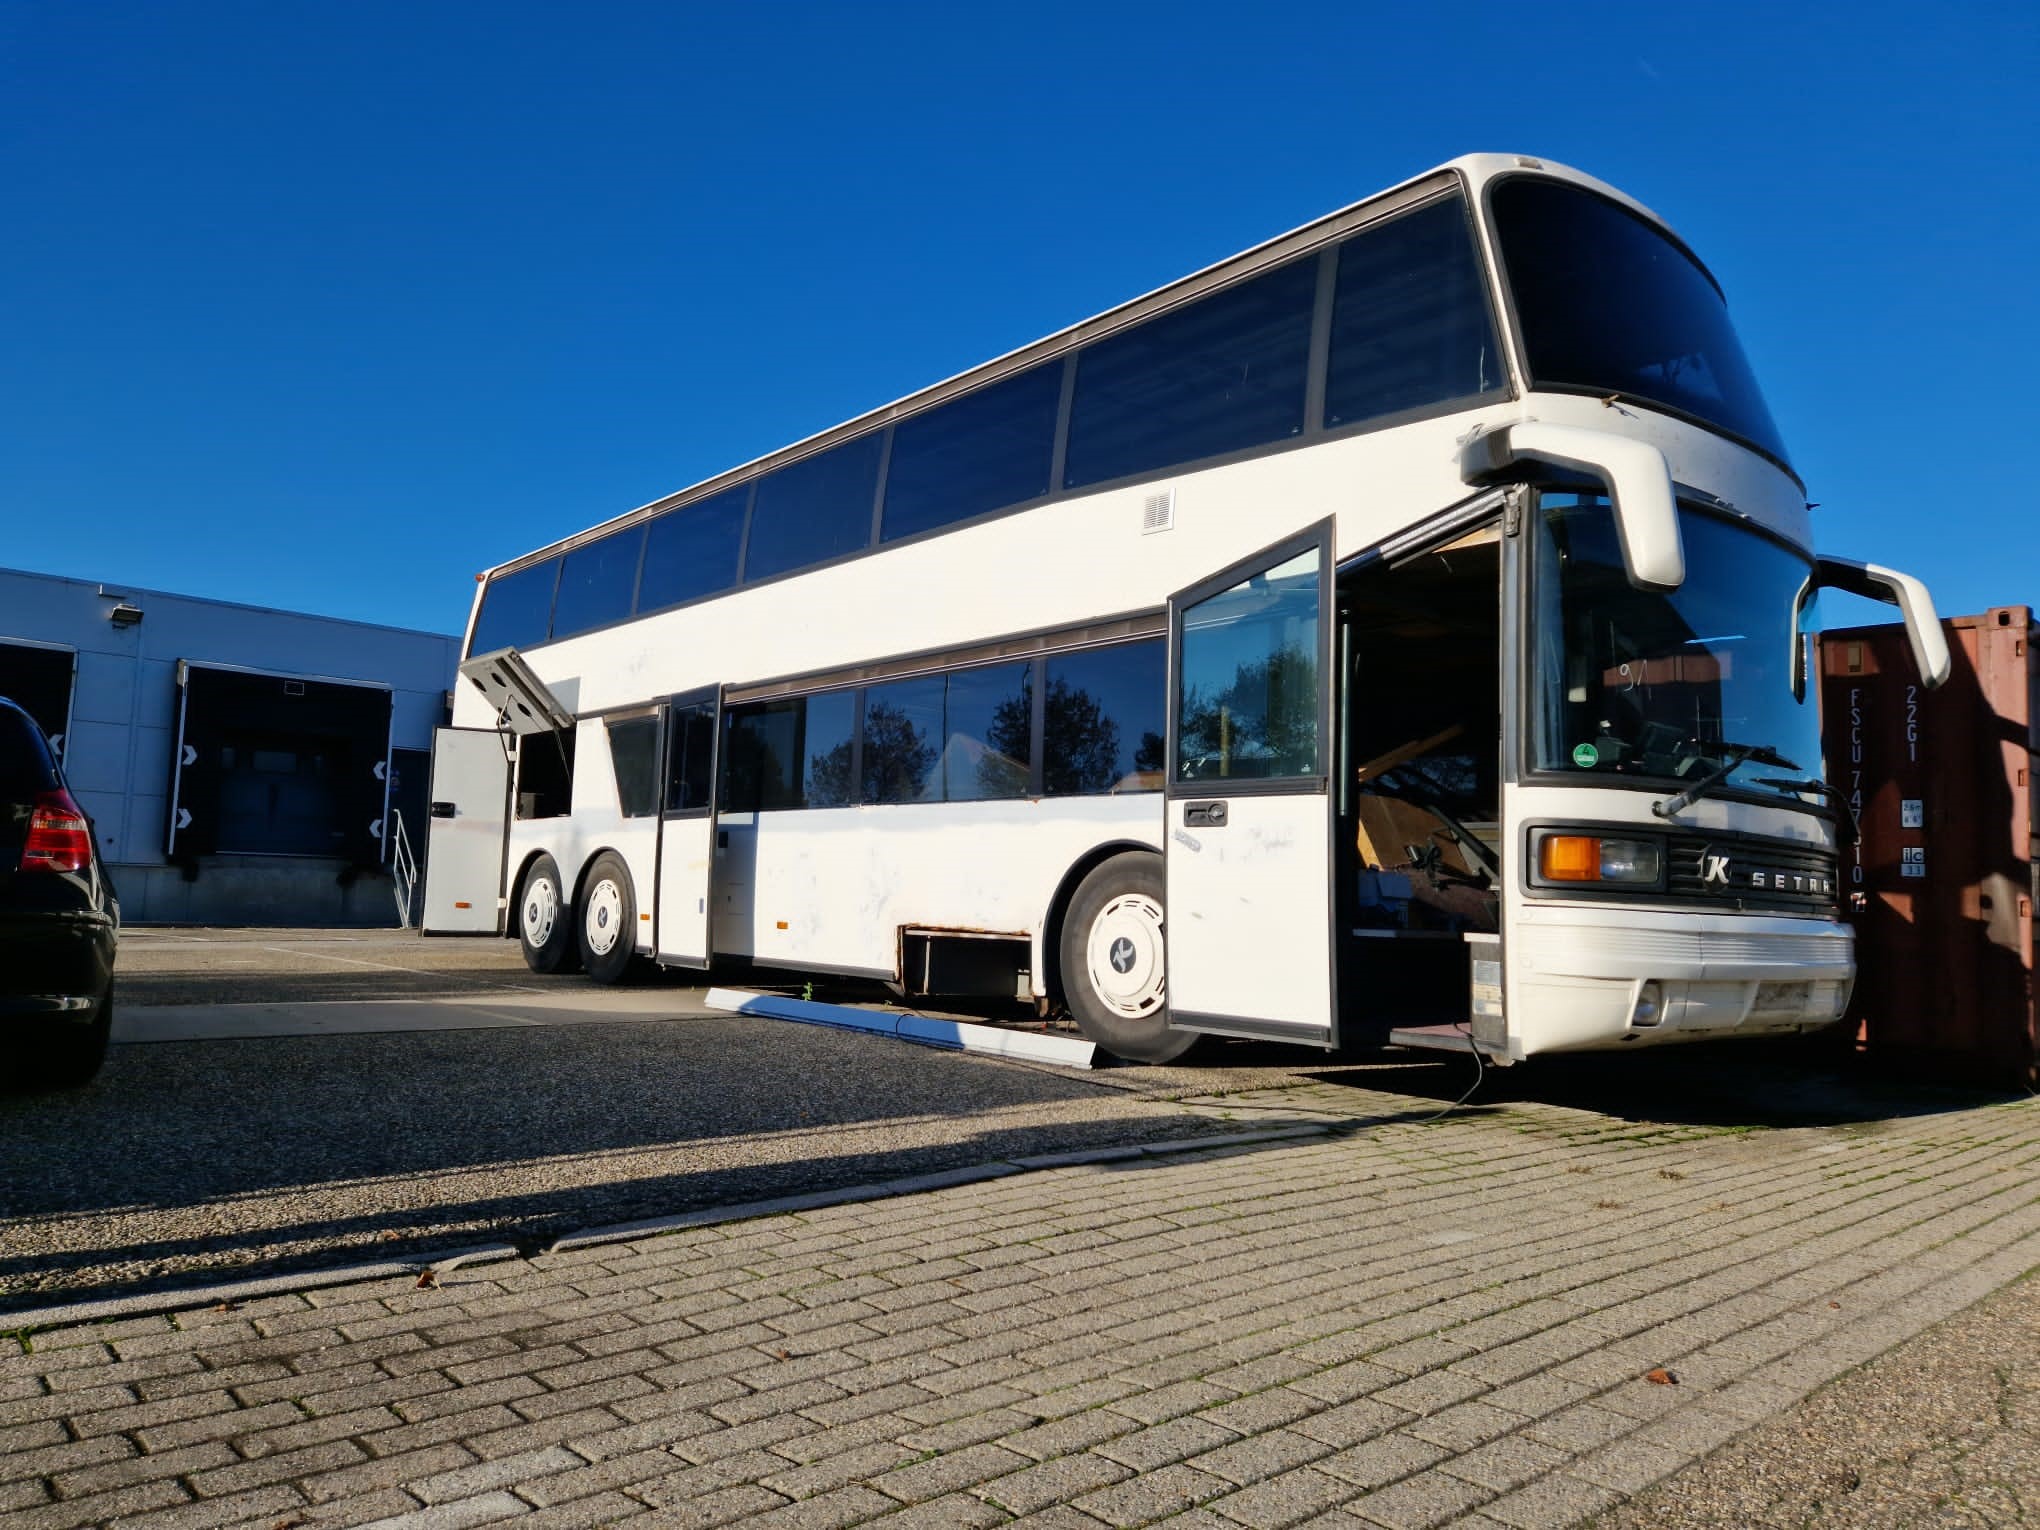 Featured image for “Setra S228 DT Dubbeldekker voor ombouw tot camper / woonbus”